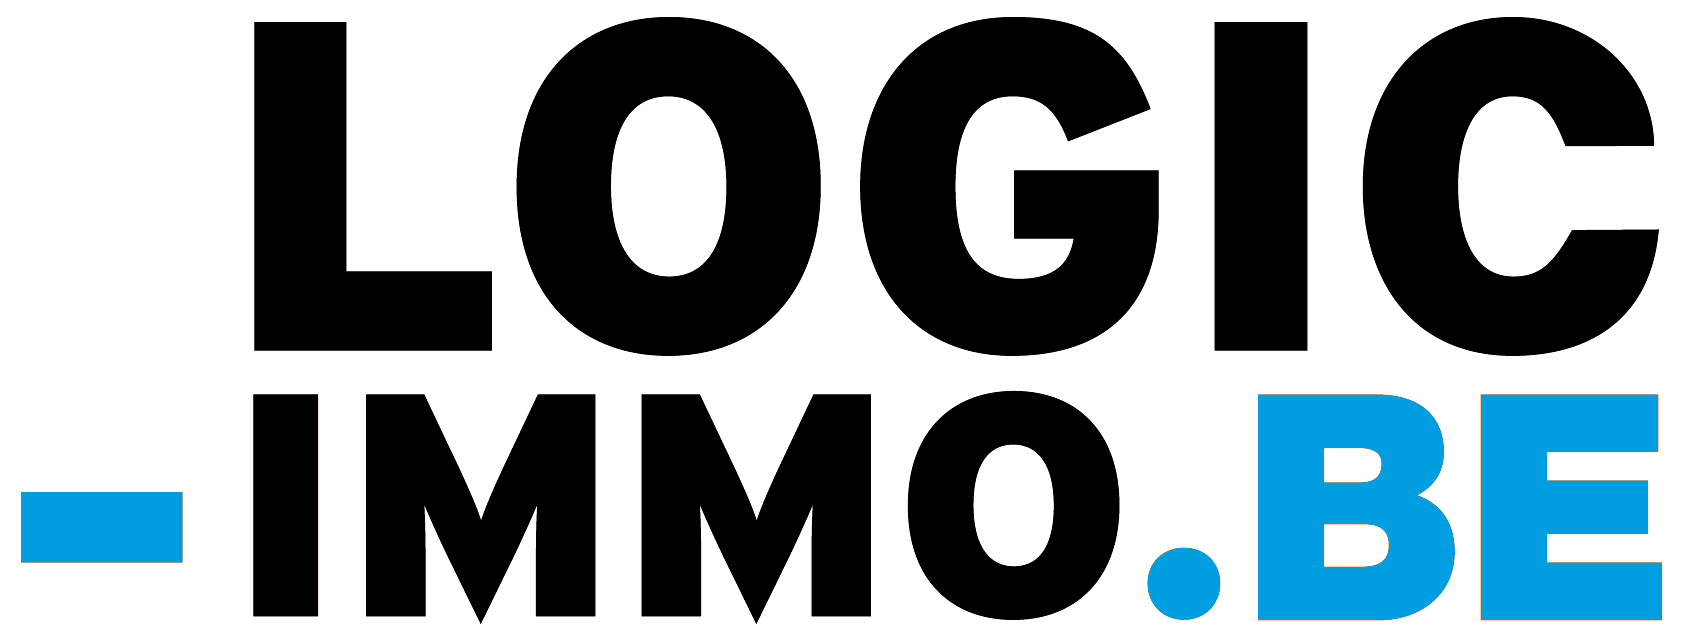 SMS Logic Logo photo - 1